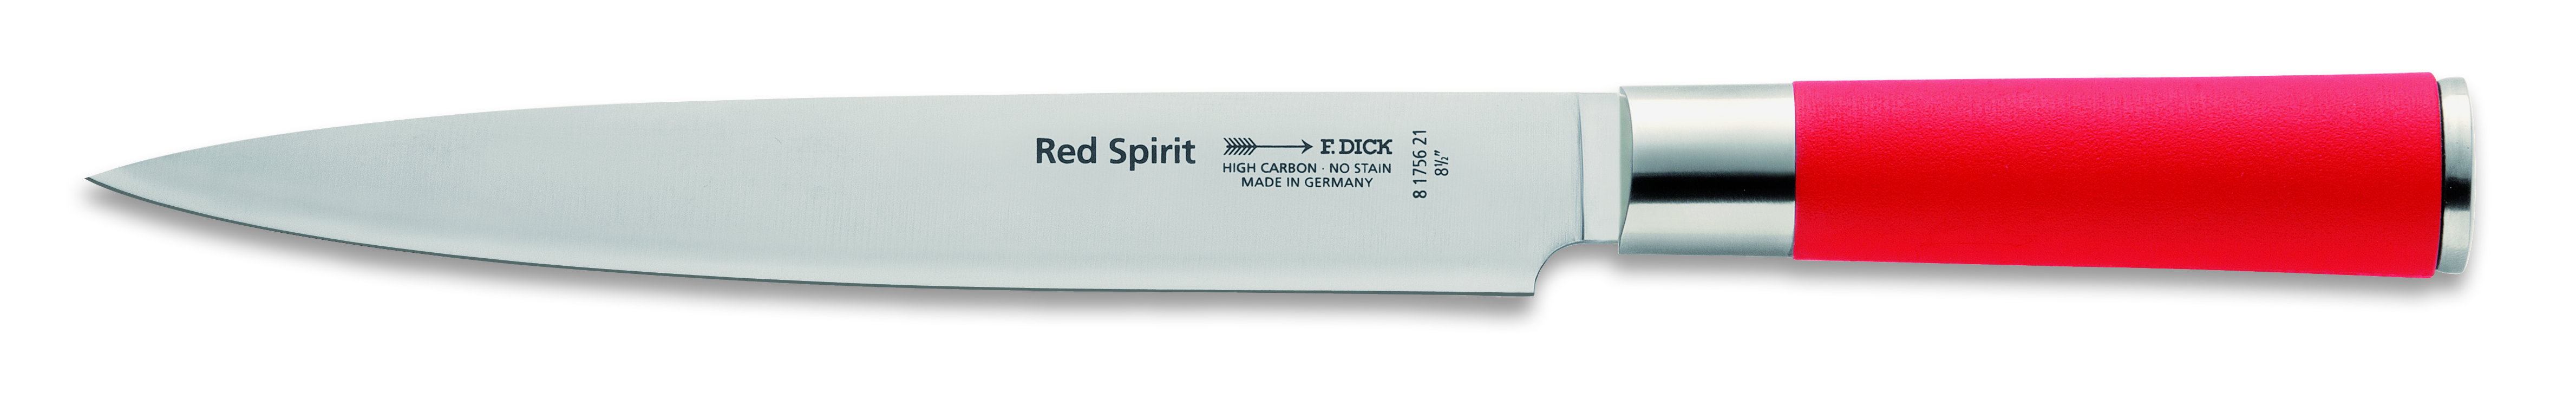 Dranžírovací nůž Dick ze série RED SPIRIT v délce 21 cm